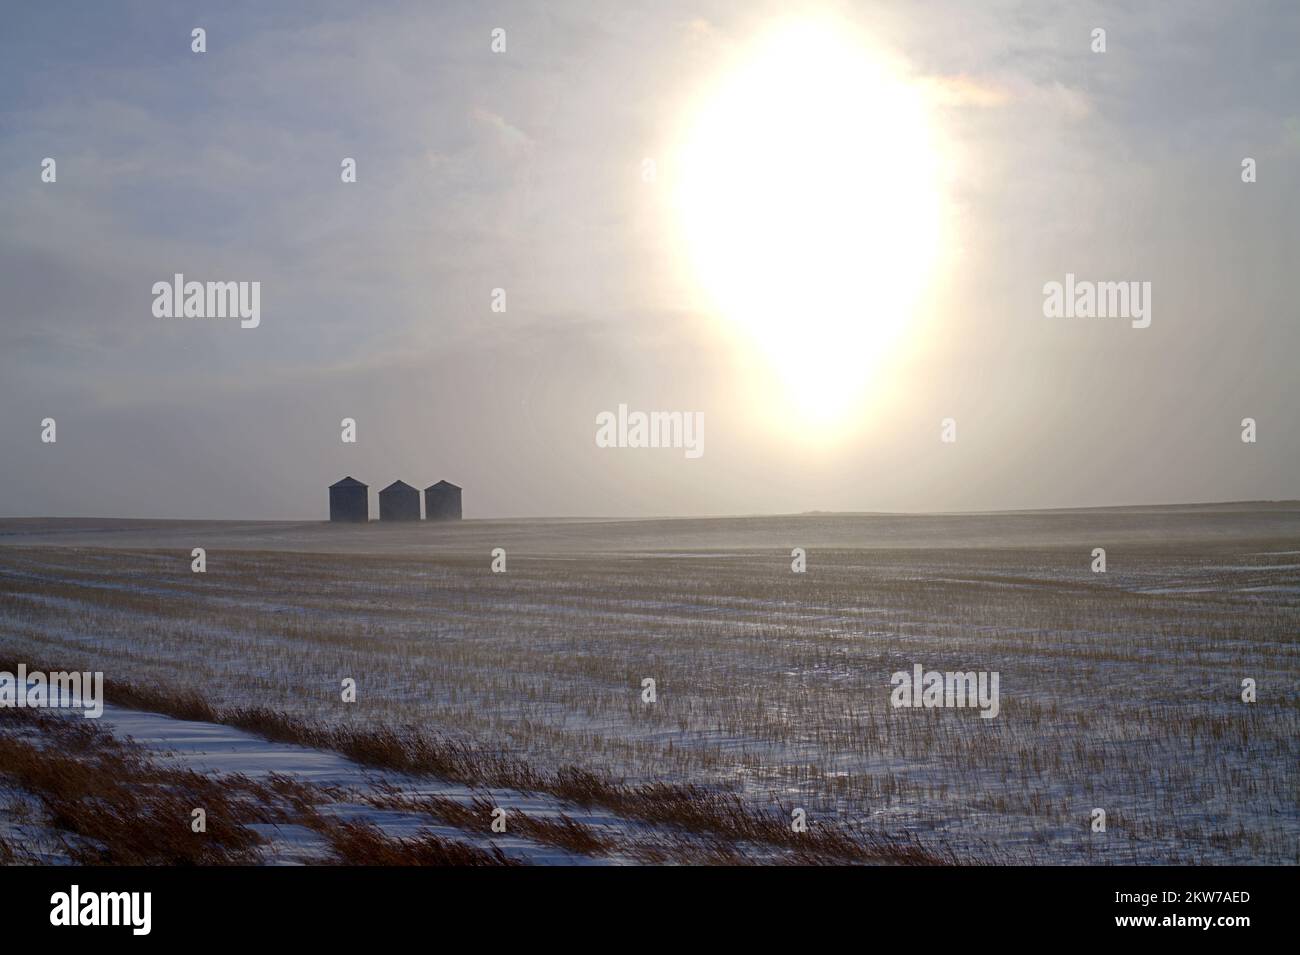 Drei Getreidesilos während eines Wintersturms in der tiefen Wintersaison im Westen von North Dakota. Dieses Bild zeigt die isolierte Realität der Landwirtschaft. Stockfoto